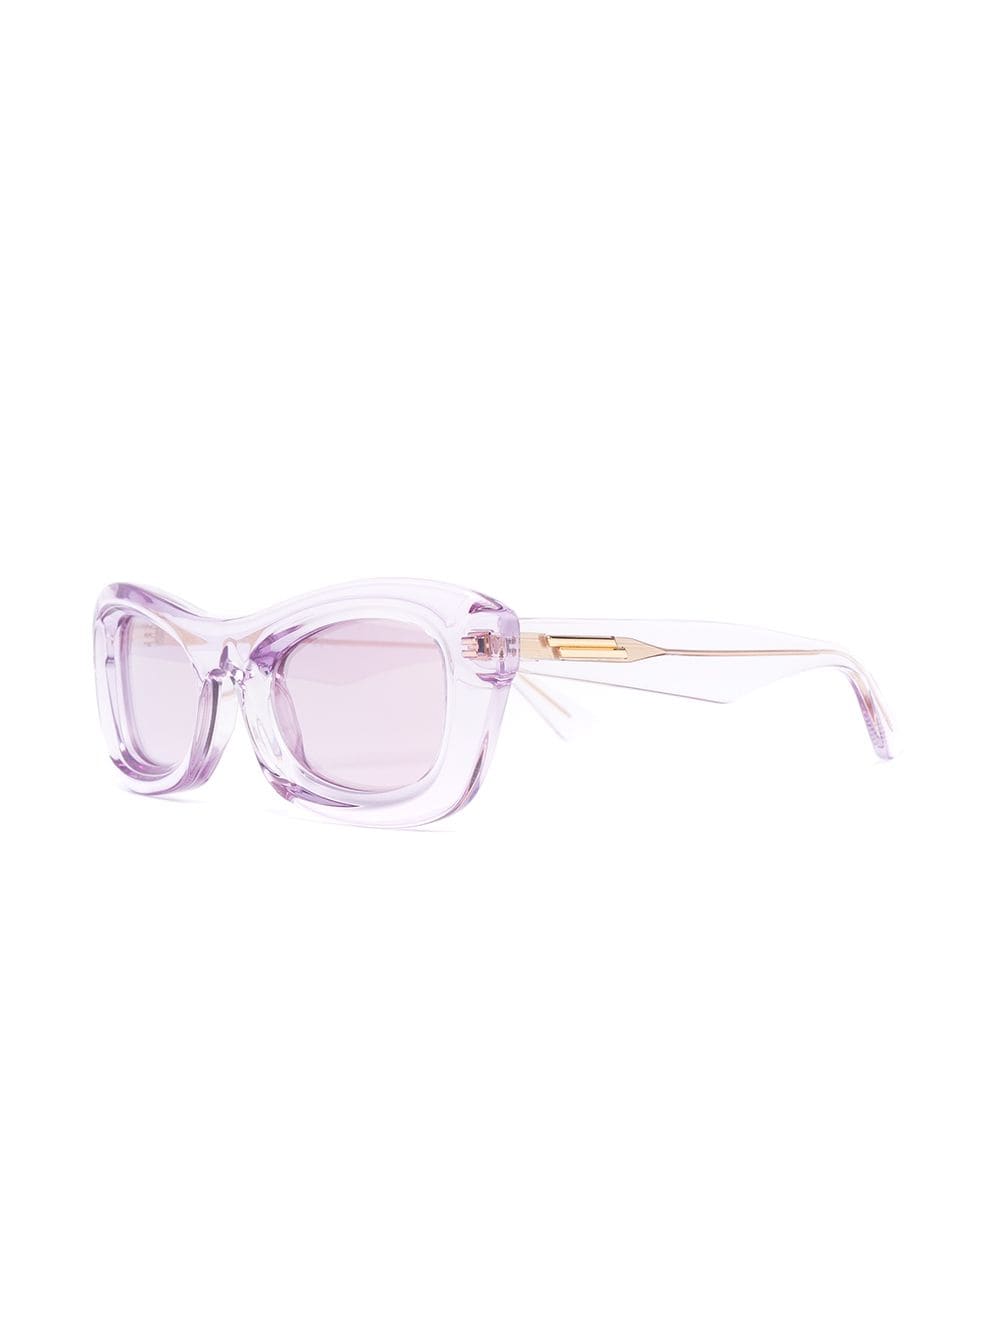 фото Bottega veneta eyewear солнцезащитные очки в прямоугольной прозрачной оправе